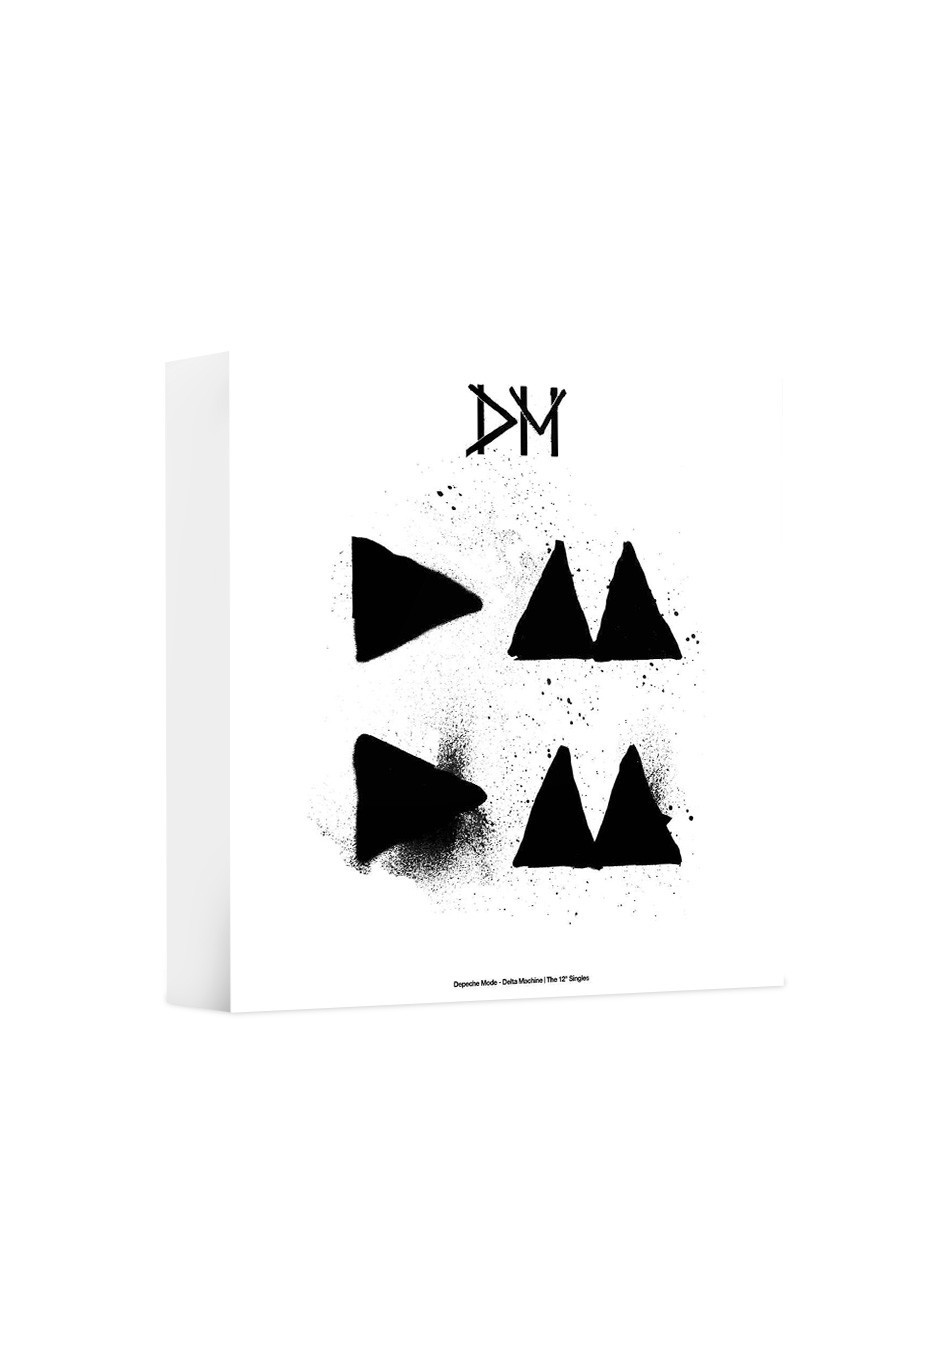 Depeche Mode - Delta Machine - The 12